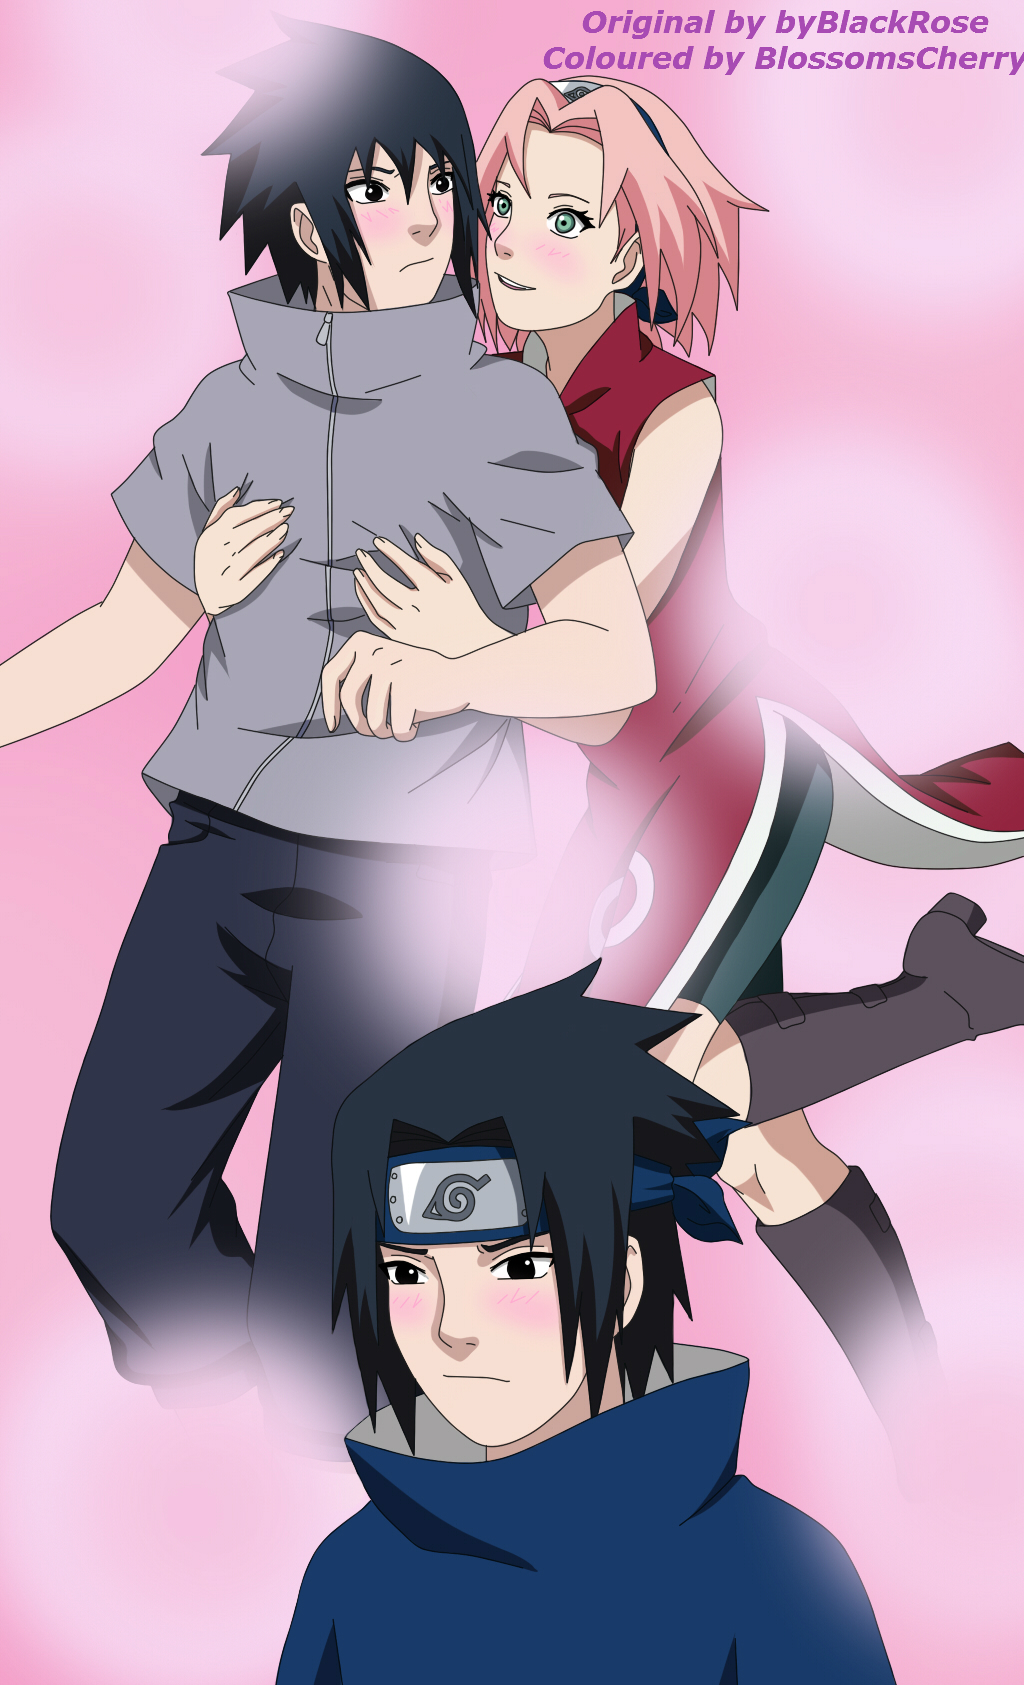 Sasuke vs Sakura by ioana24 on DeviantArt